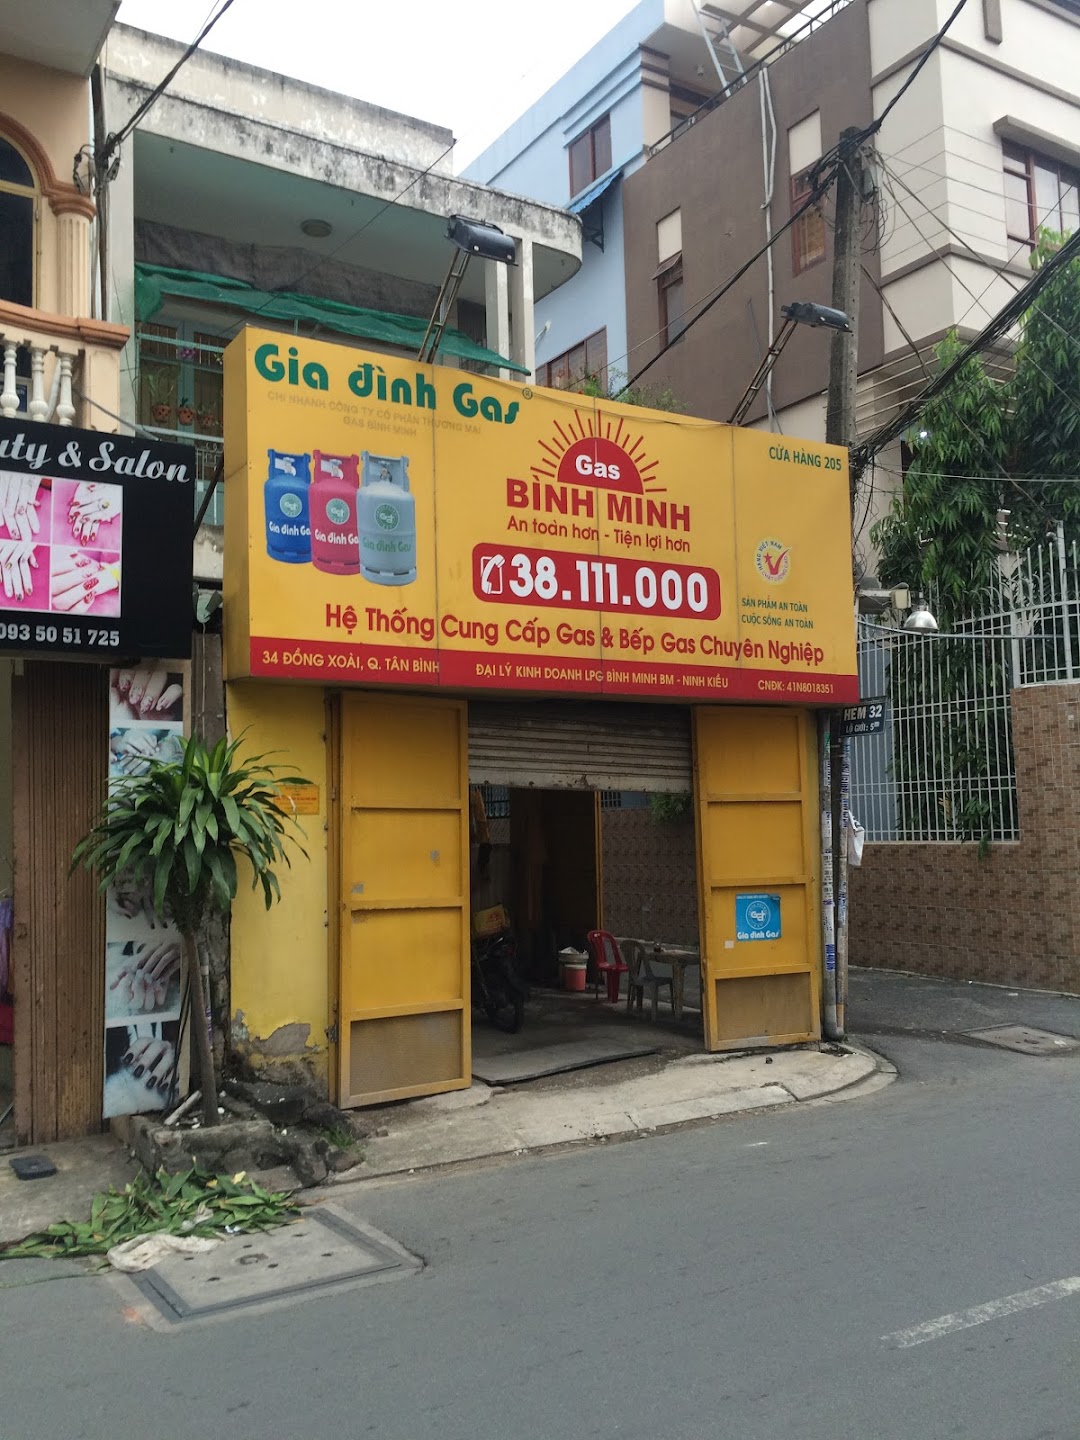 Cửa hàng Gas Bình Minh - Đồng Xoài